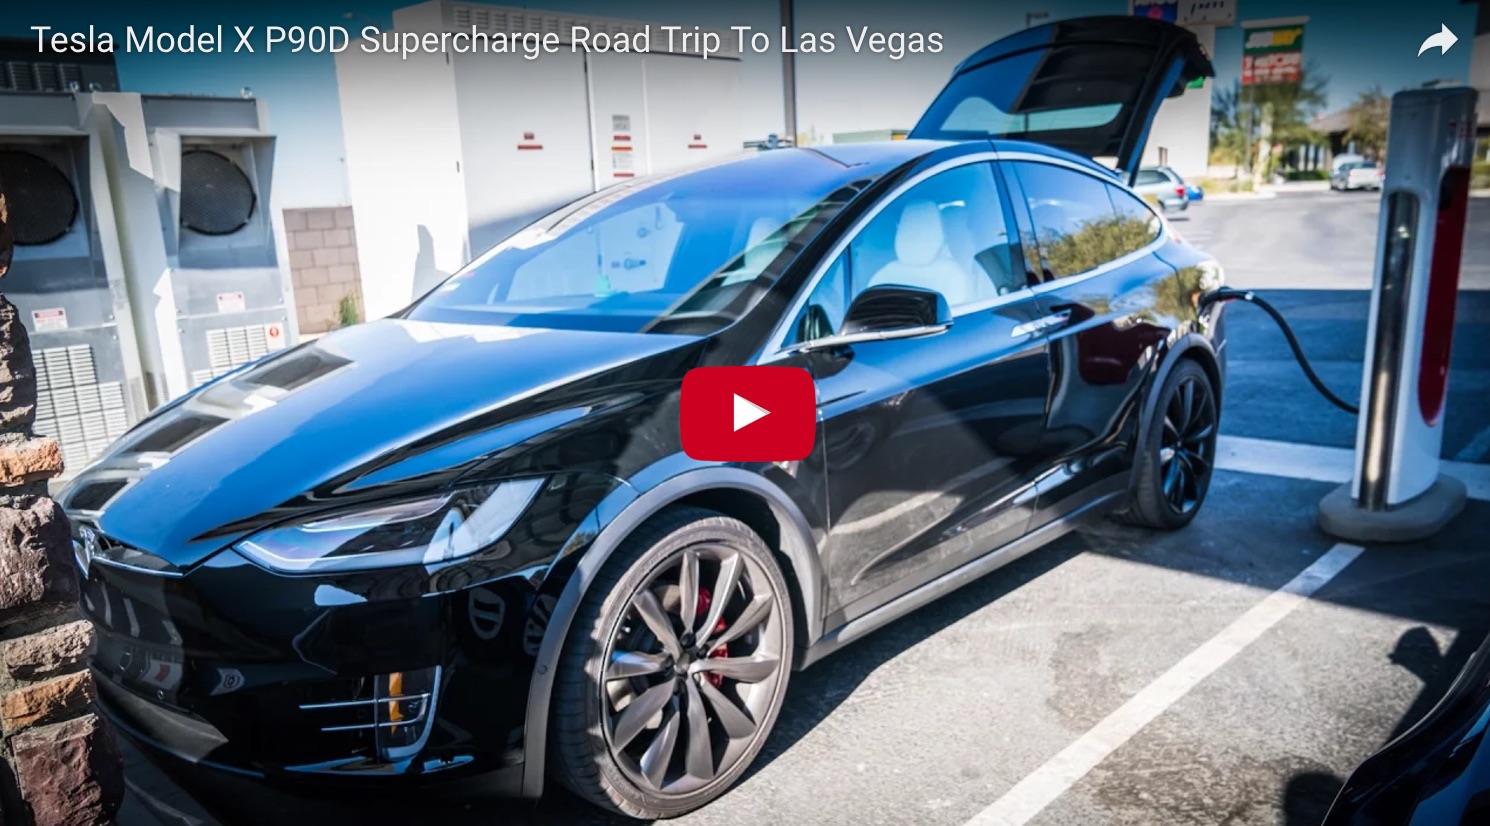 Tesla Model X P90D Supercharge Road Trip To Las Vegas